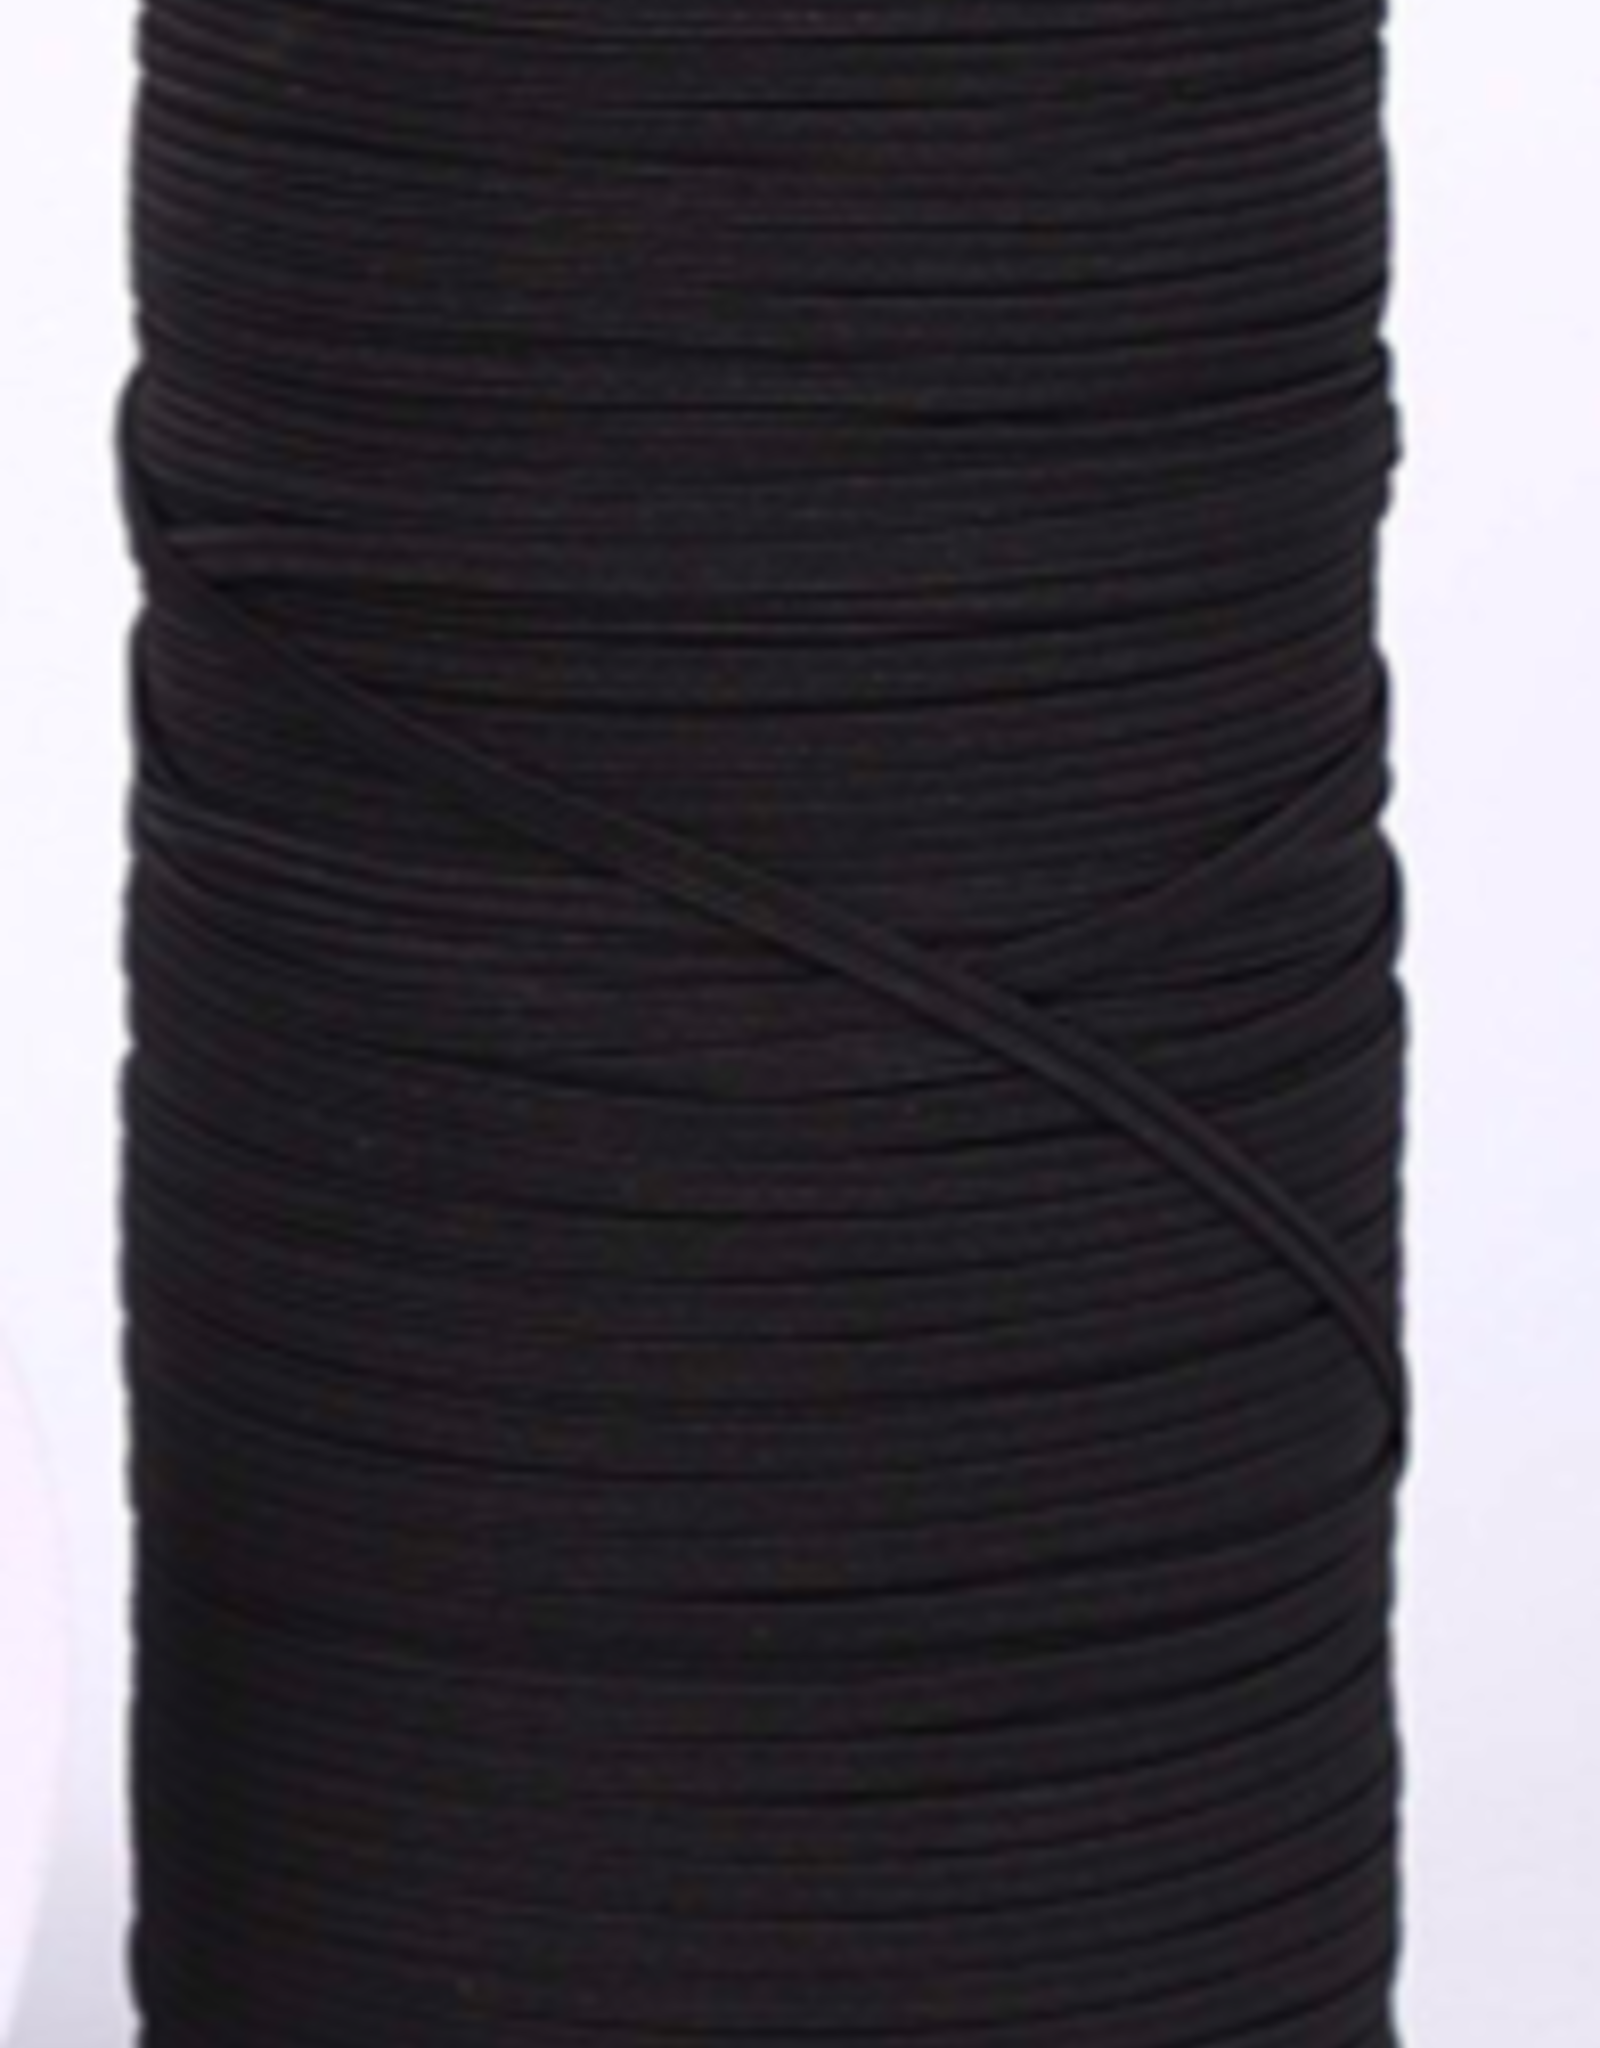 Elastic 1/8 inch black (1m)